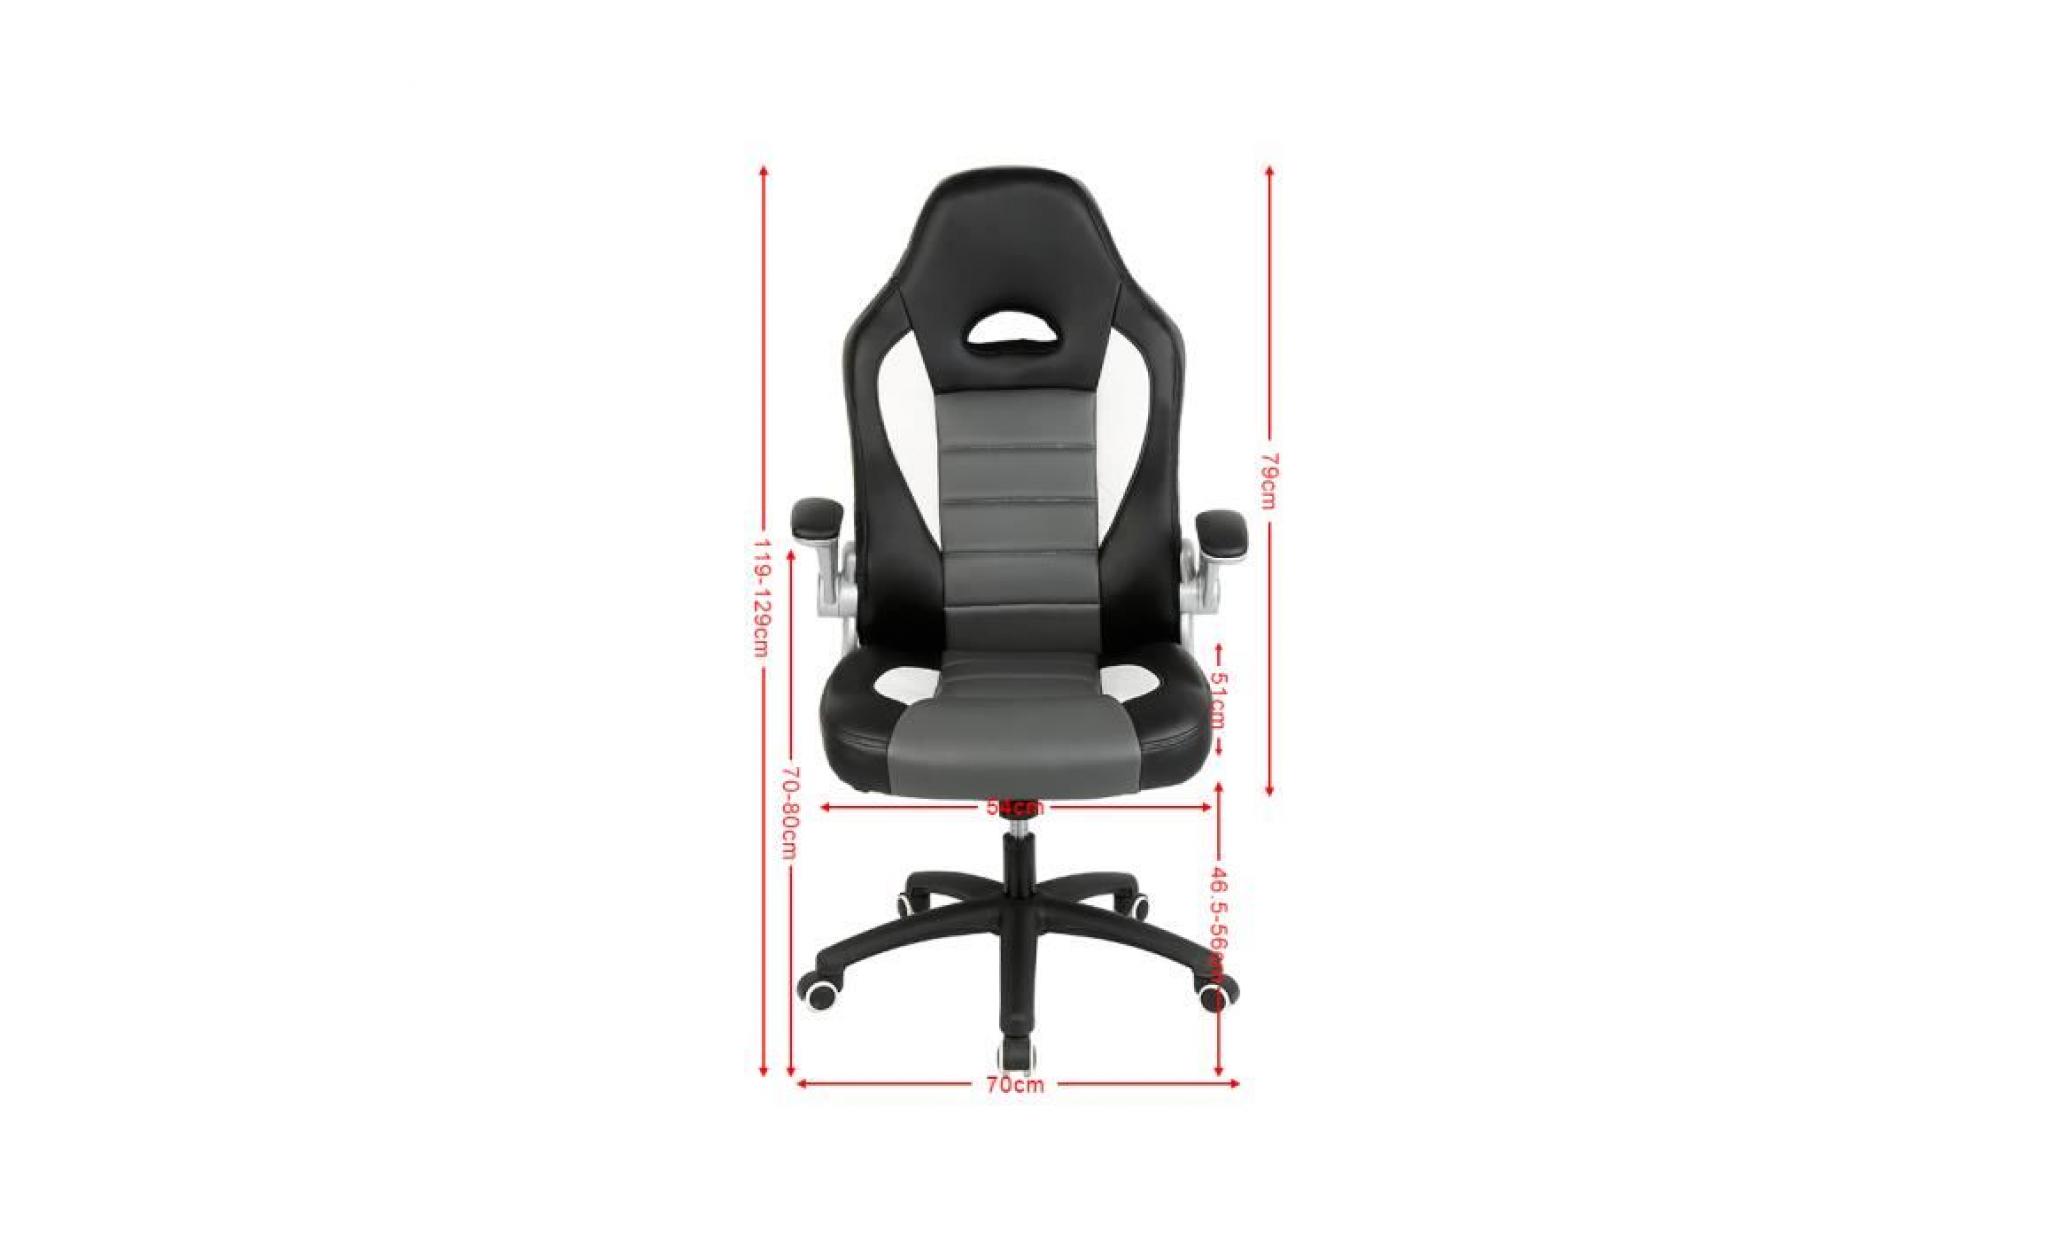 fauteuil gamer chaise fauteuil siège de bureau sport ergonomique ,lift sgs contrôlé (noir/gris/blanc) pas cher